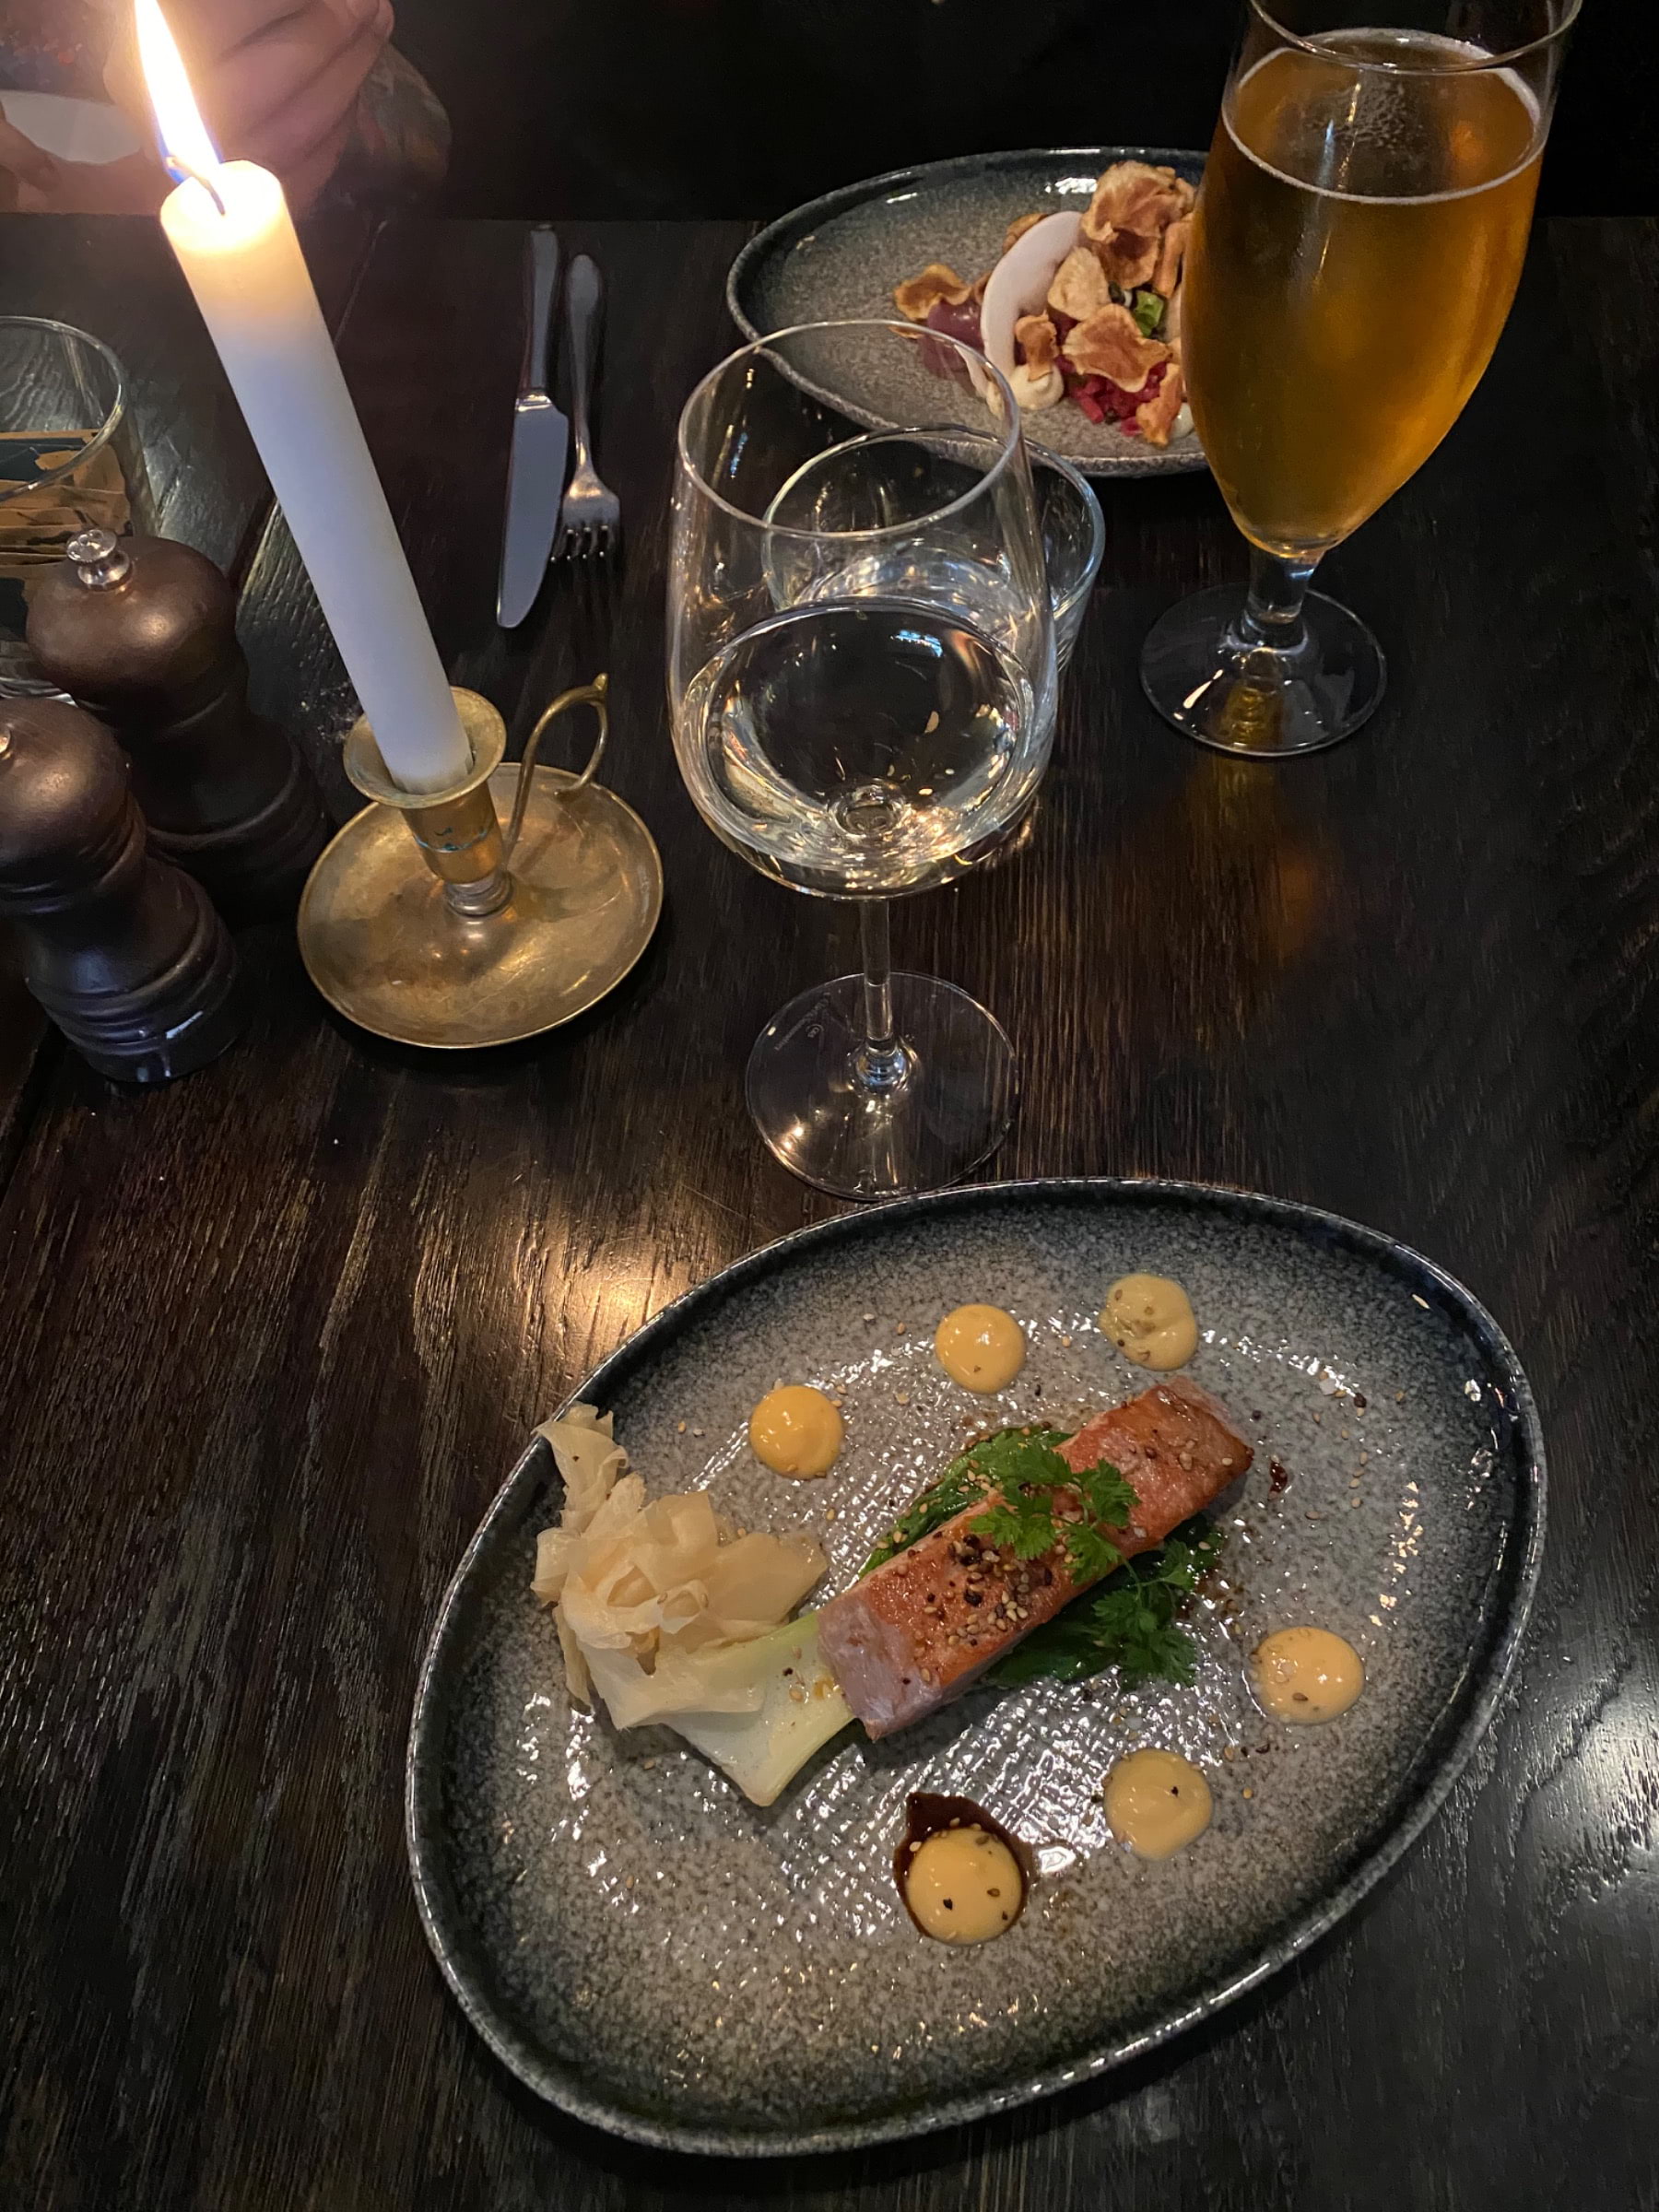 Sotad tonfisk med pak choi, srirachamajonnäs, chilirostade sesamfrön och koriander – Bild från Bistroteket av Lisa S. (2020-09-20)